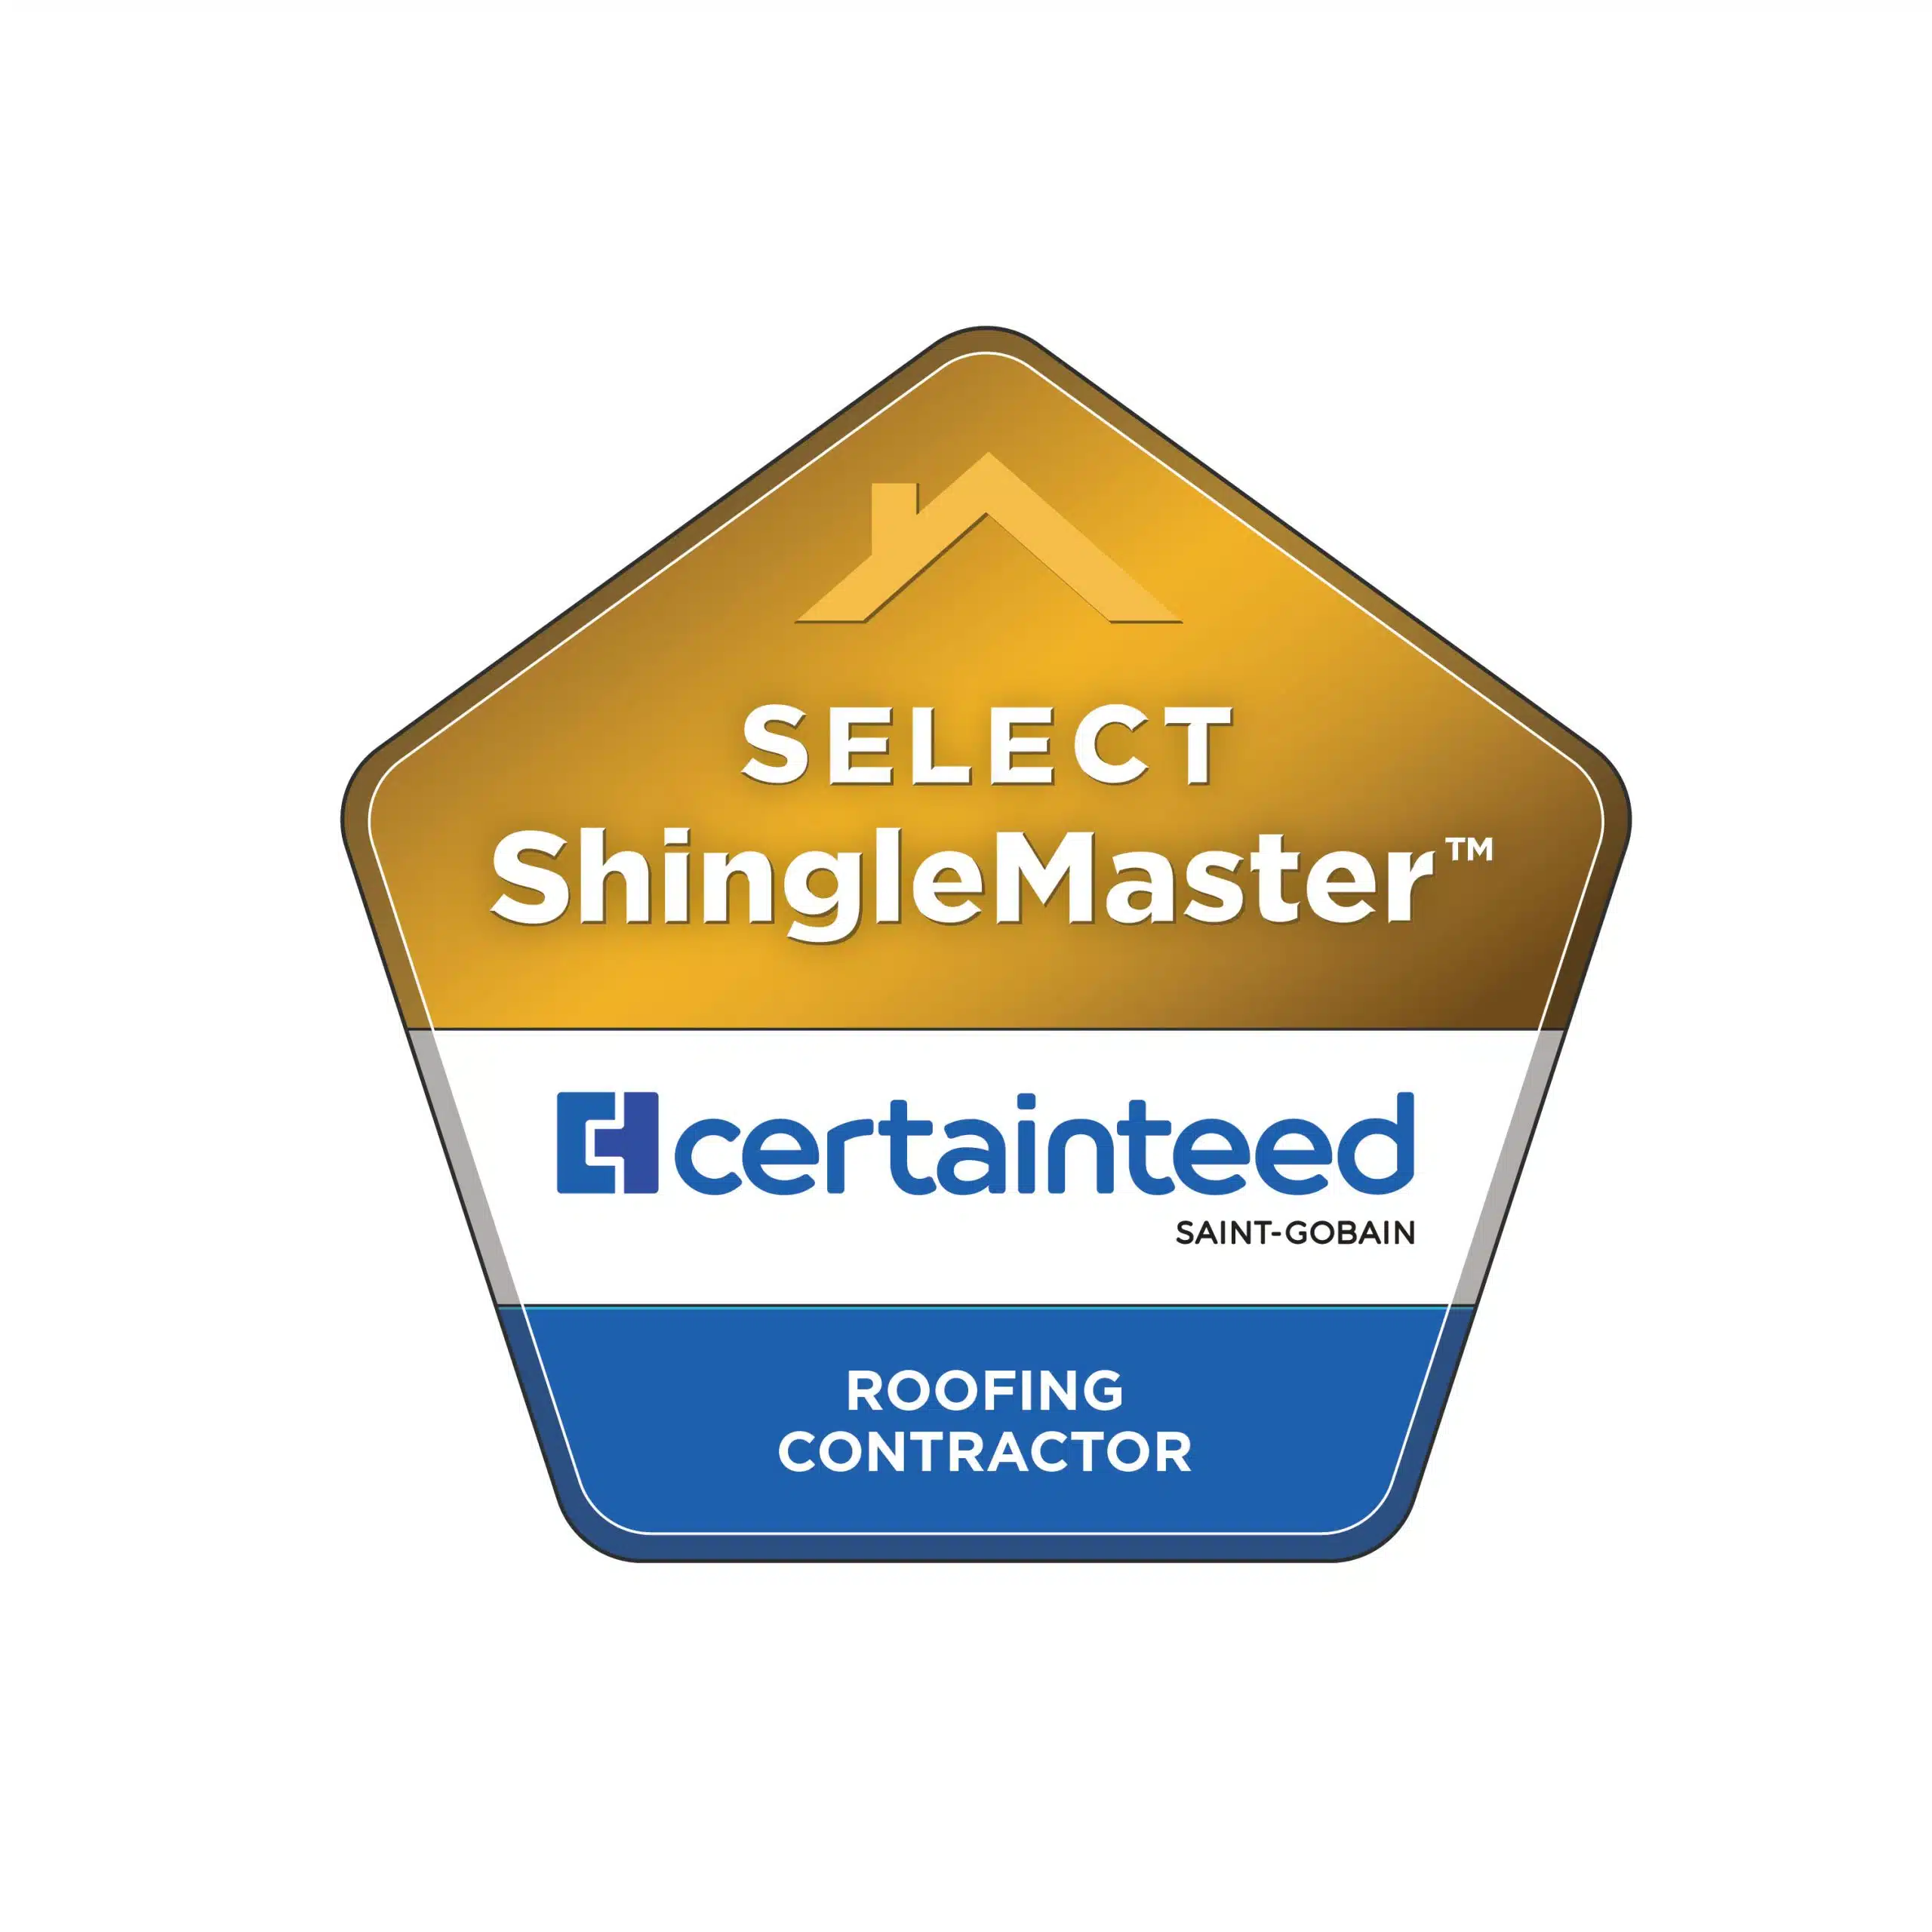 Roofing contractor certificate badge